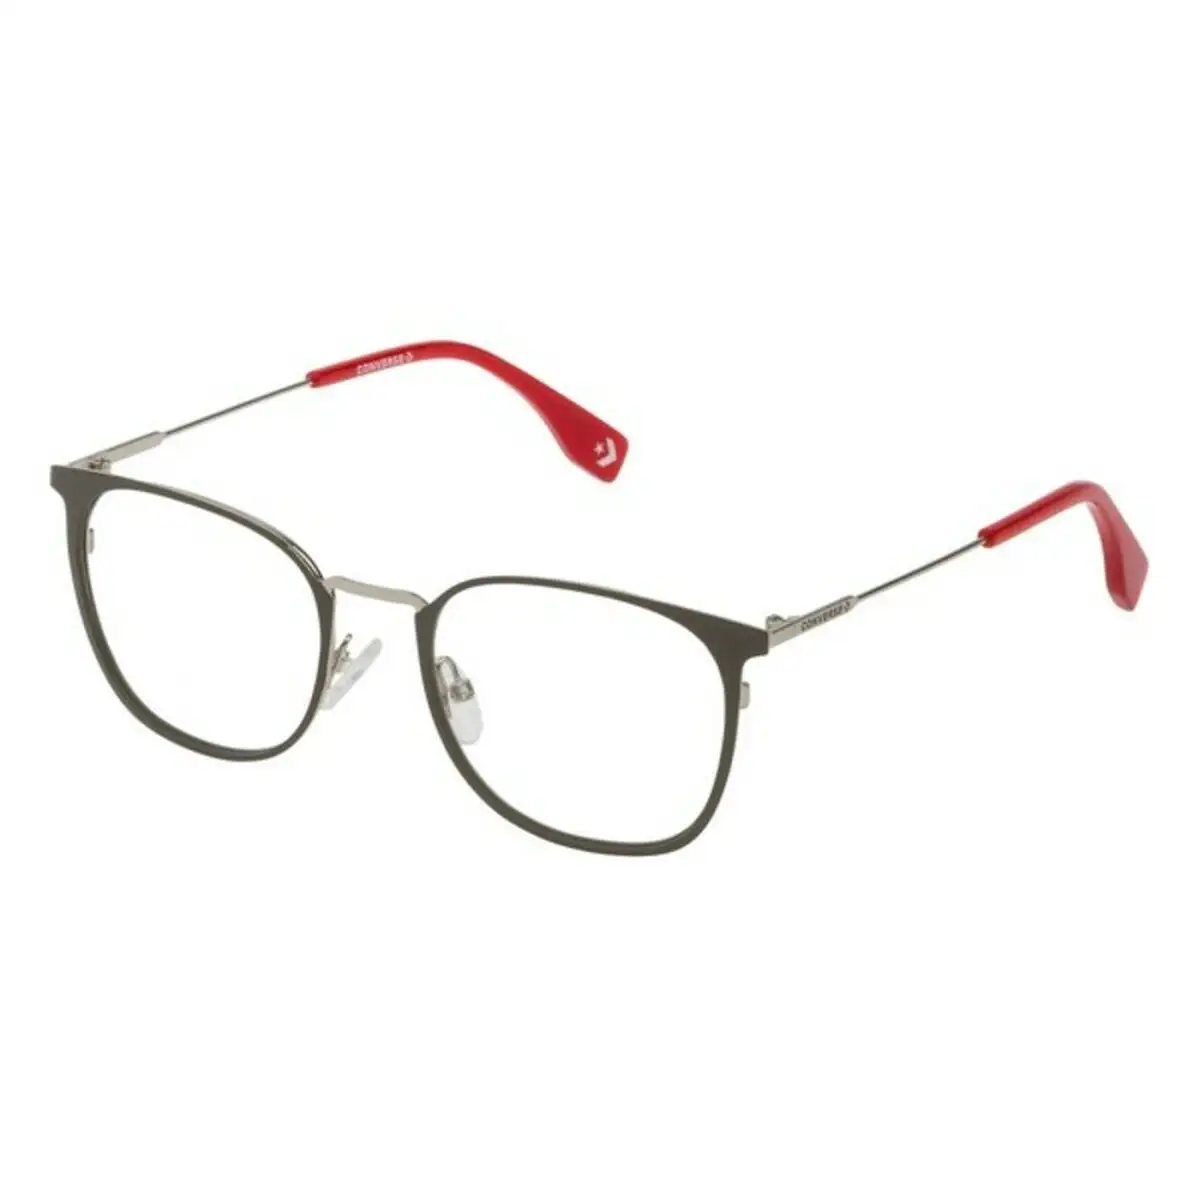 Monture de lunettes homme converse vco066q51539y gris o 51 mm _2153. DIAYTAR SENEGAL - Où Votre Shopping Prend Vie. Explorez notre boutique en ligne pour trouver des articles qui vous ressemblent et qui ajoutent de l'éclat à votre quotidien.